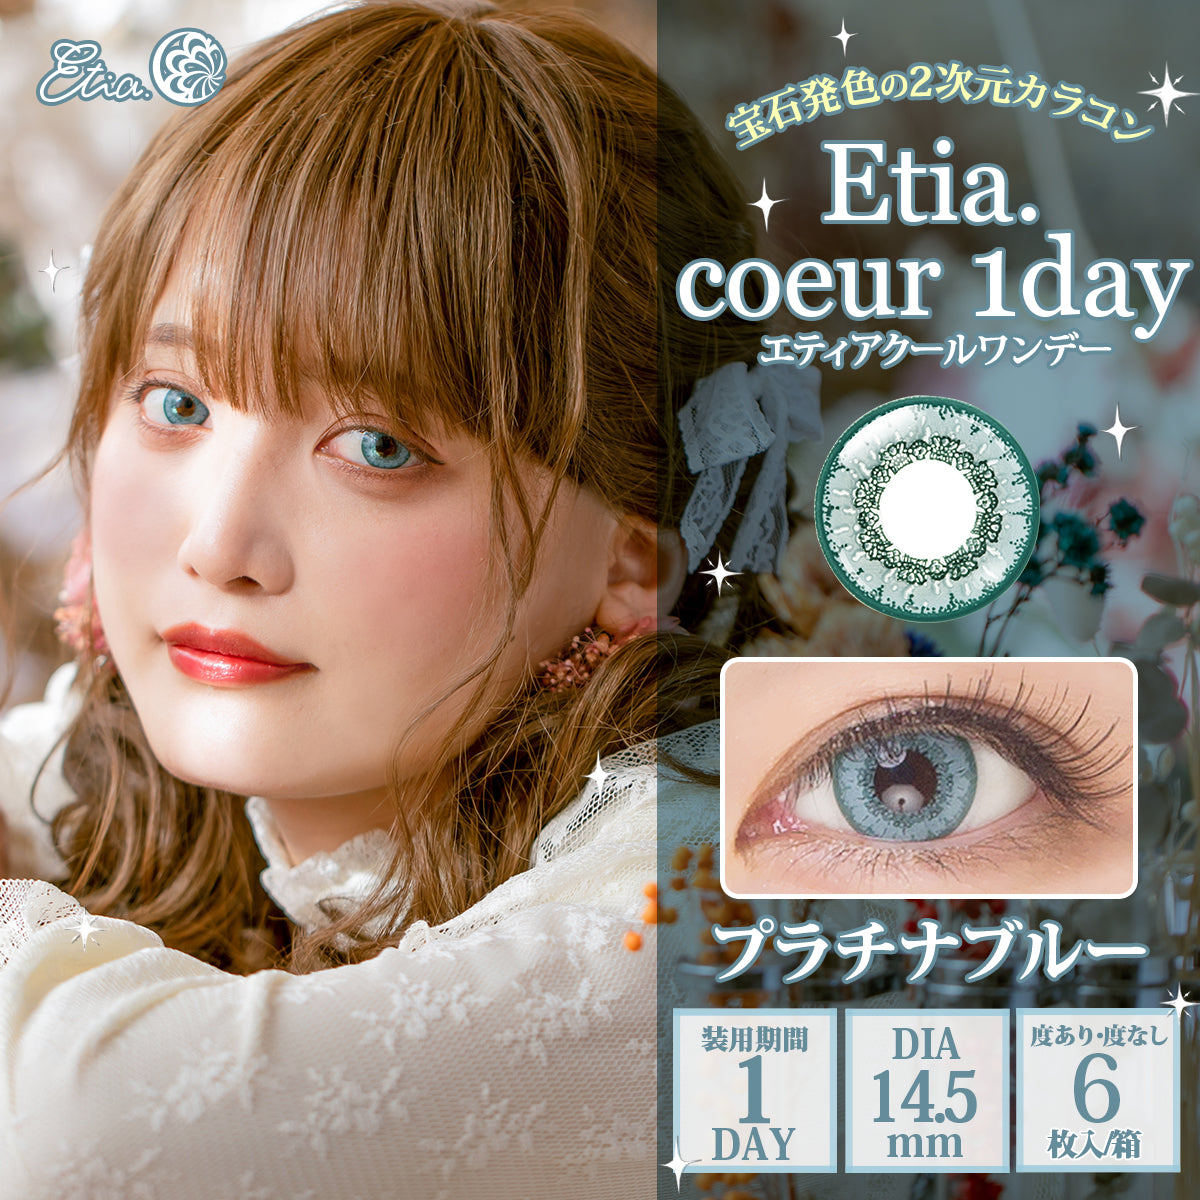 PUDDING Etia Coeur Platinum Blue | 1 Day, 6 Pcs